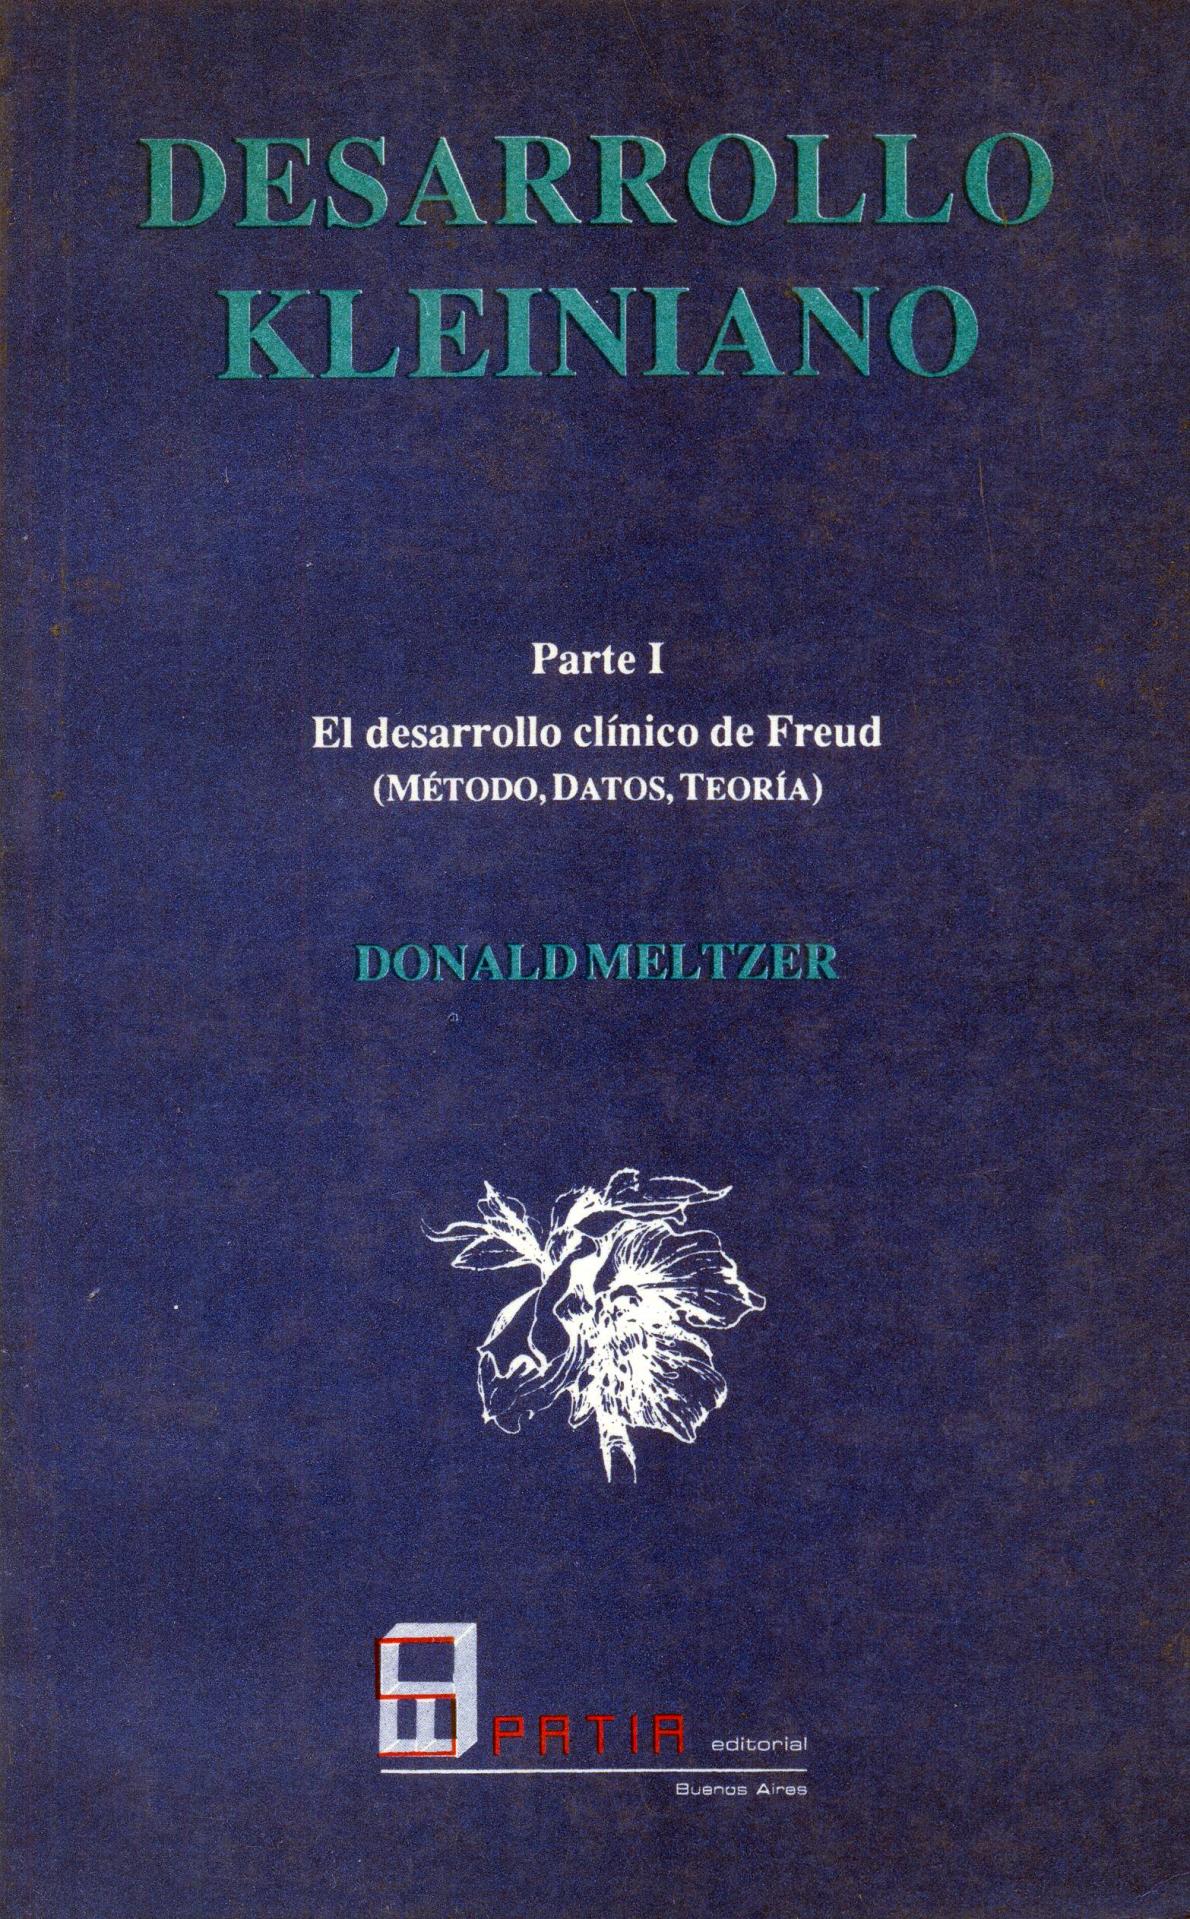 DESARROLLO KLEINIANO. Parte I.  El desarrollo clínico de Freud (método, datos, teoría). Meltzer, D.